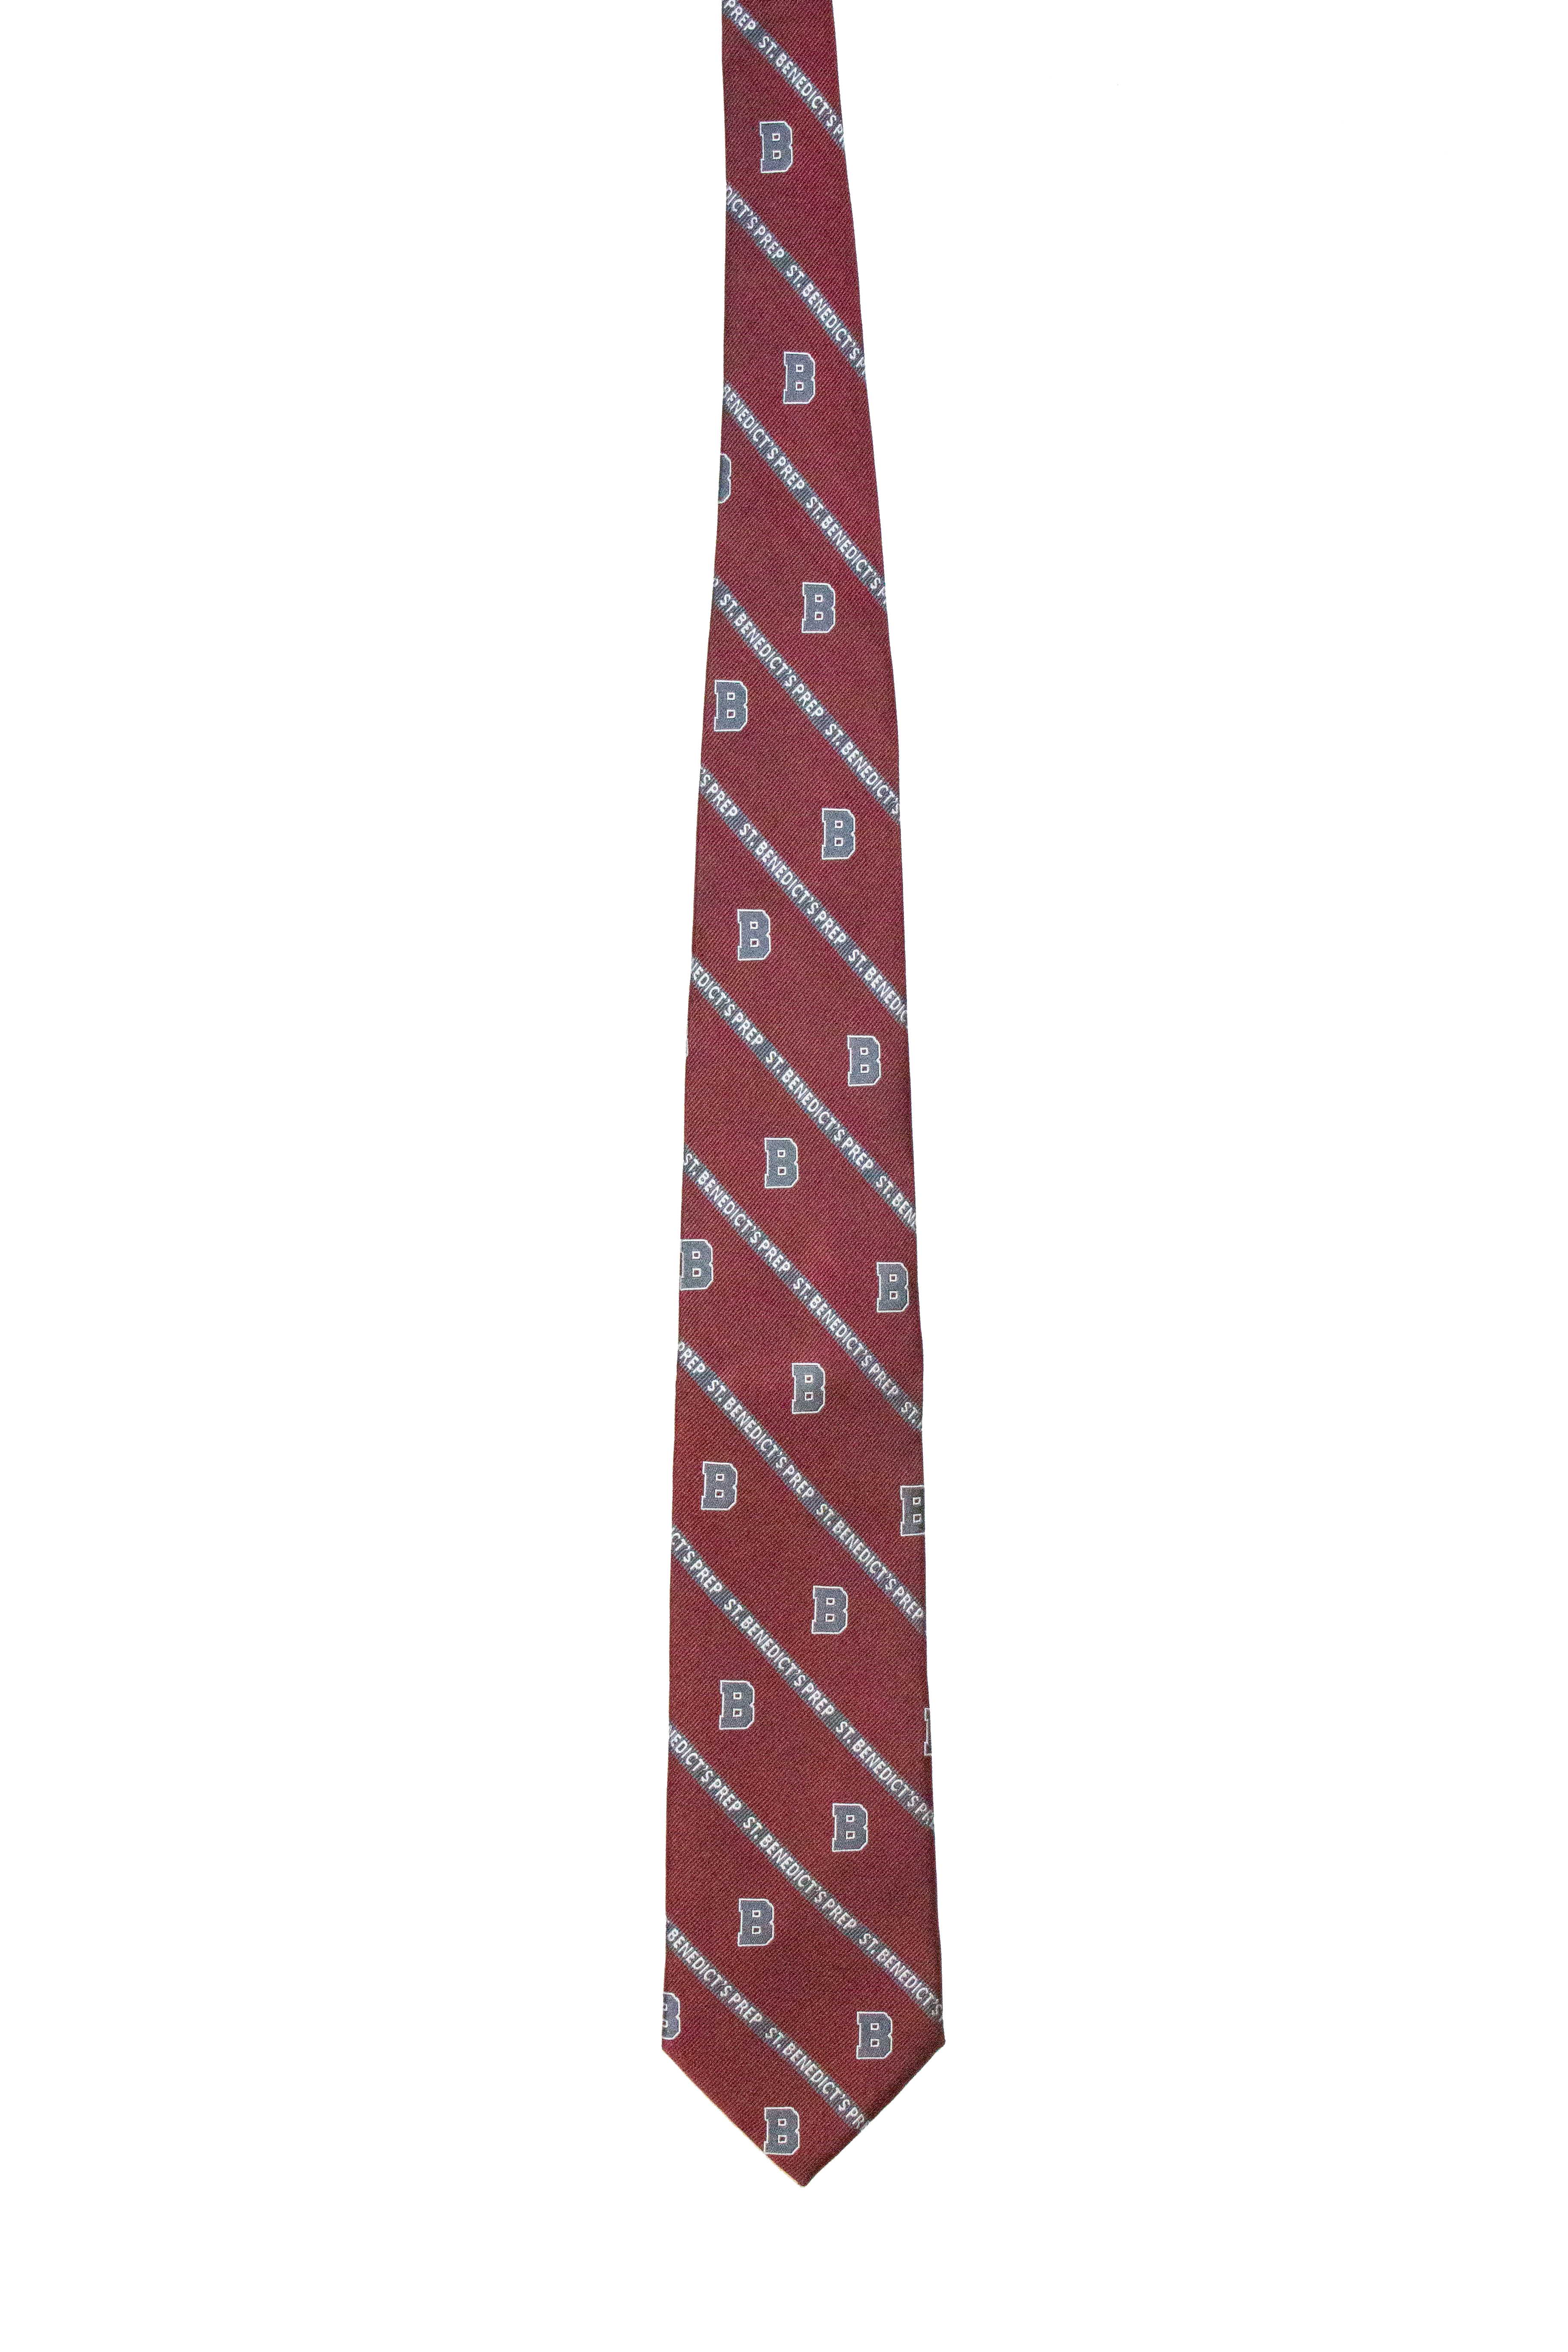 SBP Necktie